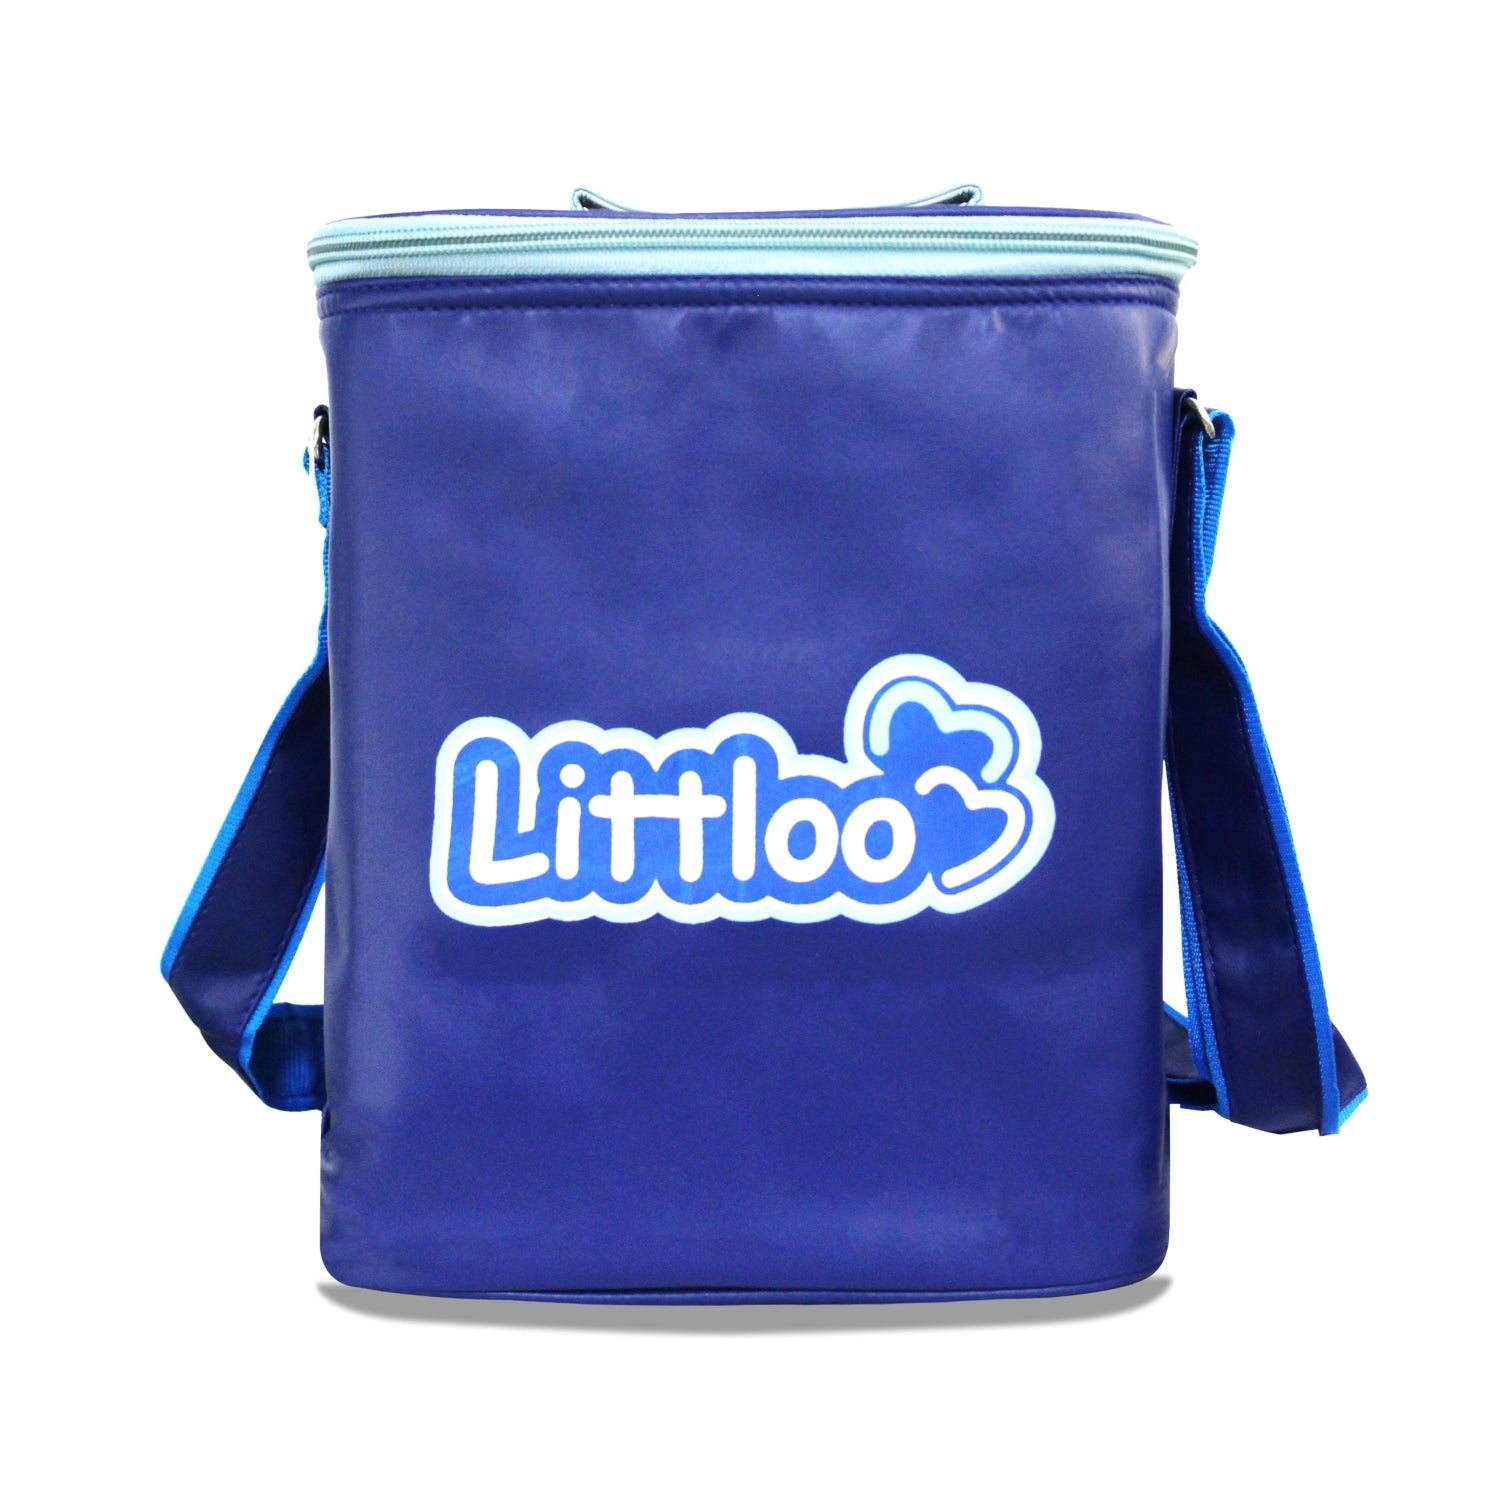 Littloo Carry Bag | Multipurpose Baby Bag For Travel - Littloo